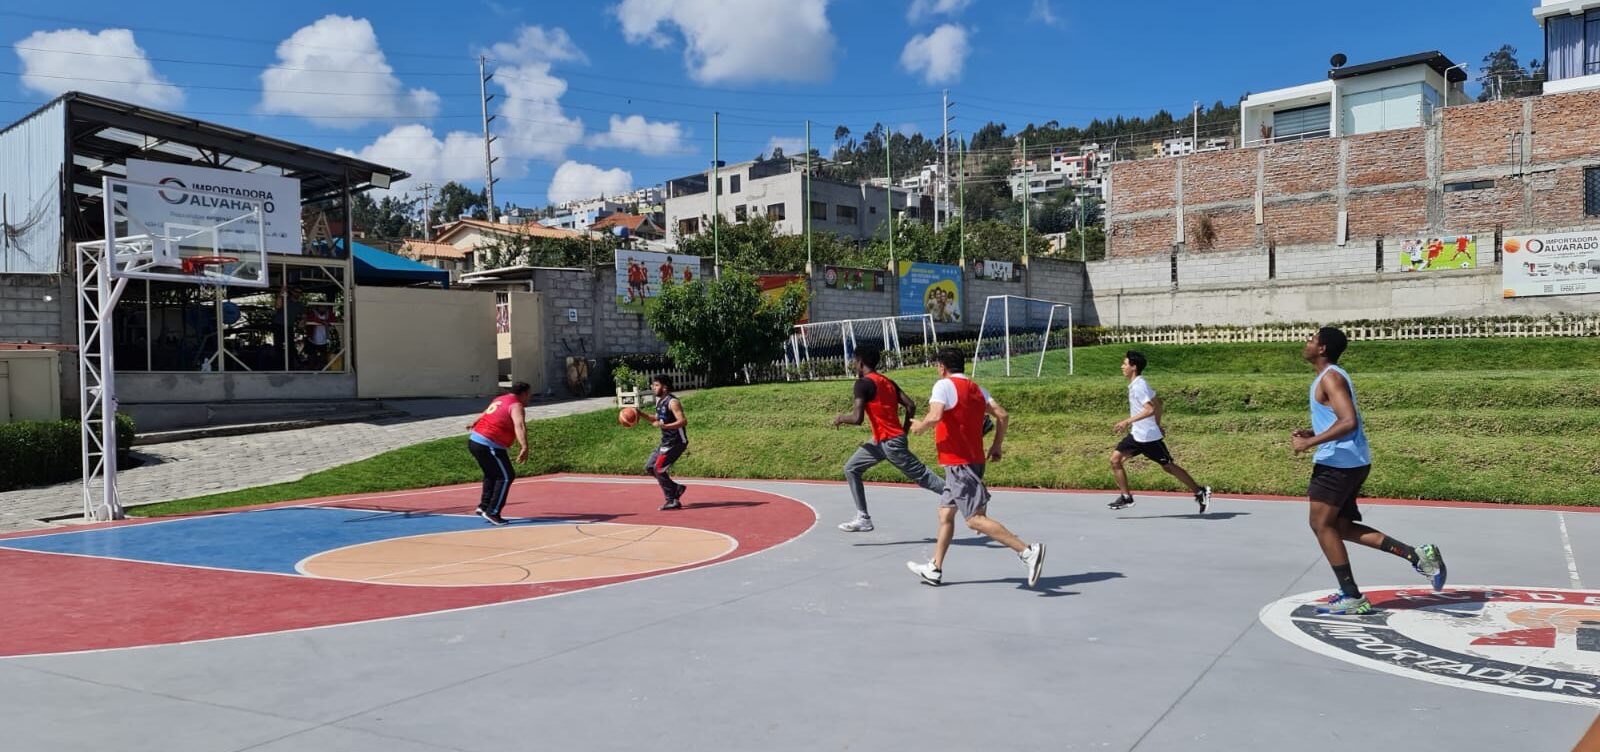 Importadora Alvarado organiza por primera vez un campeonato abierto 3x3 de baloncesto en Tungurahua.